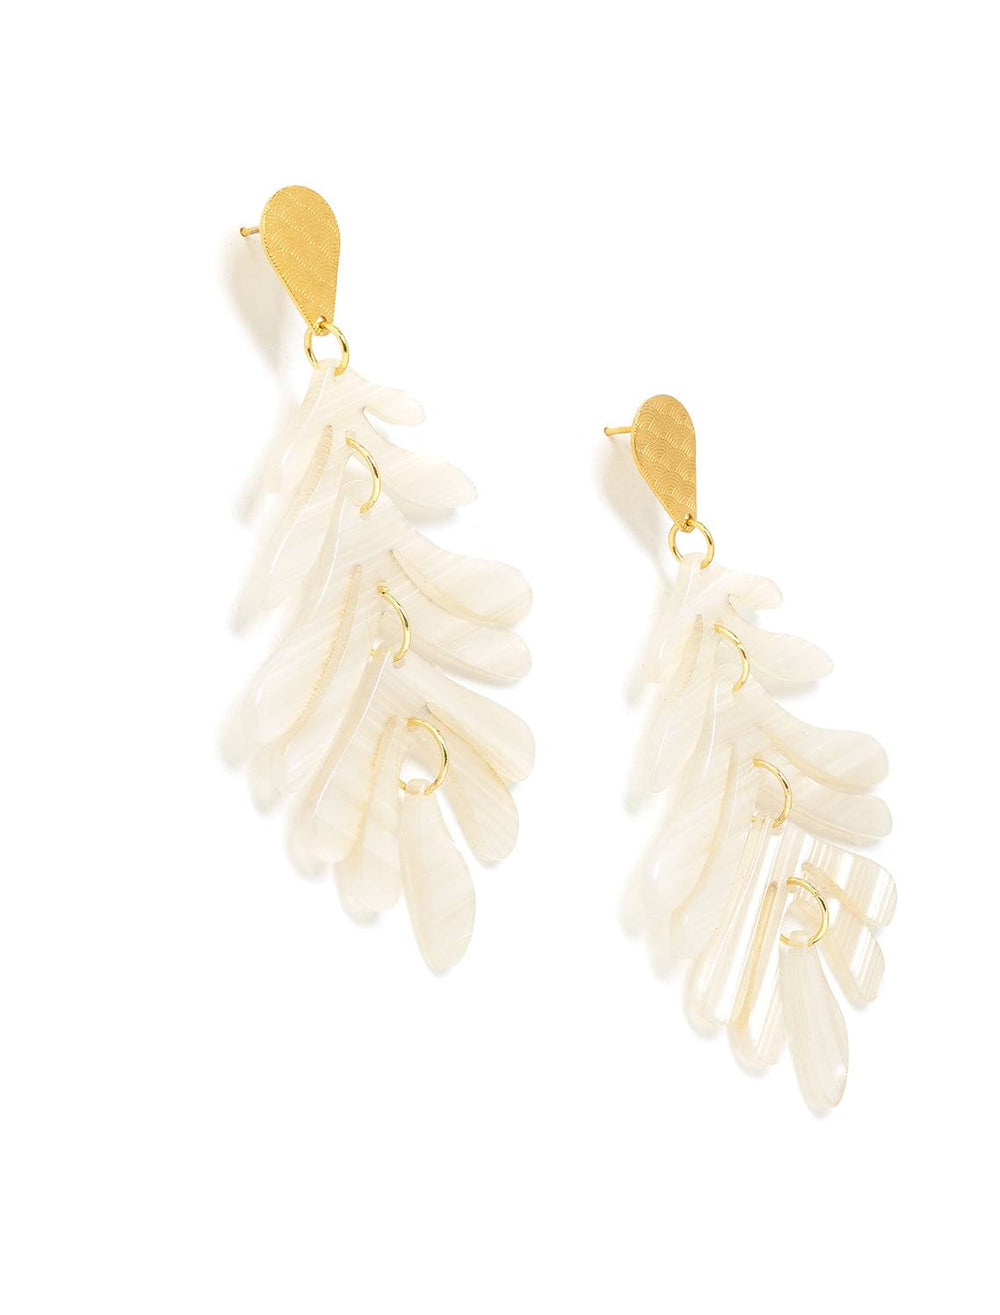 palm earrings in seashell (2)